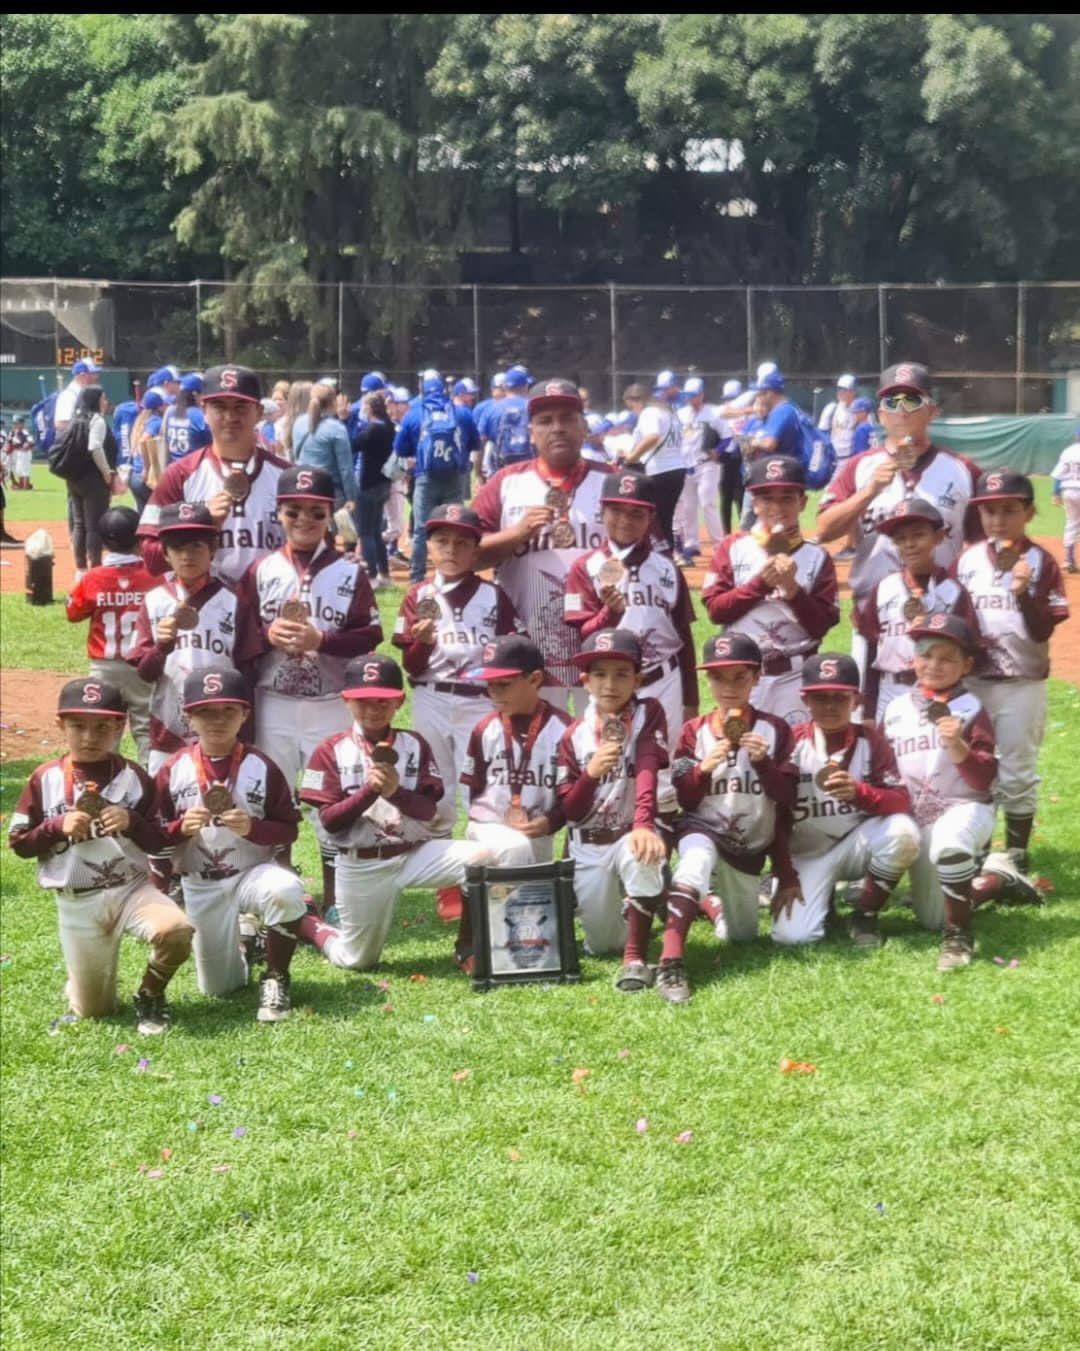 $!Sinaloa logra el tercer lugar en Nacional de Beisbol categoría 7-8 años, en la CDMX